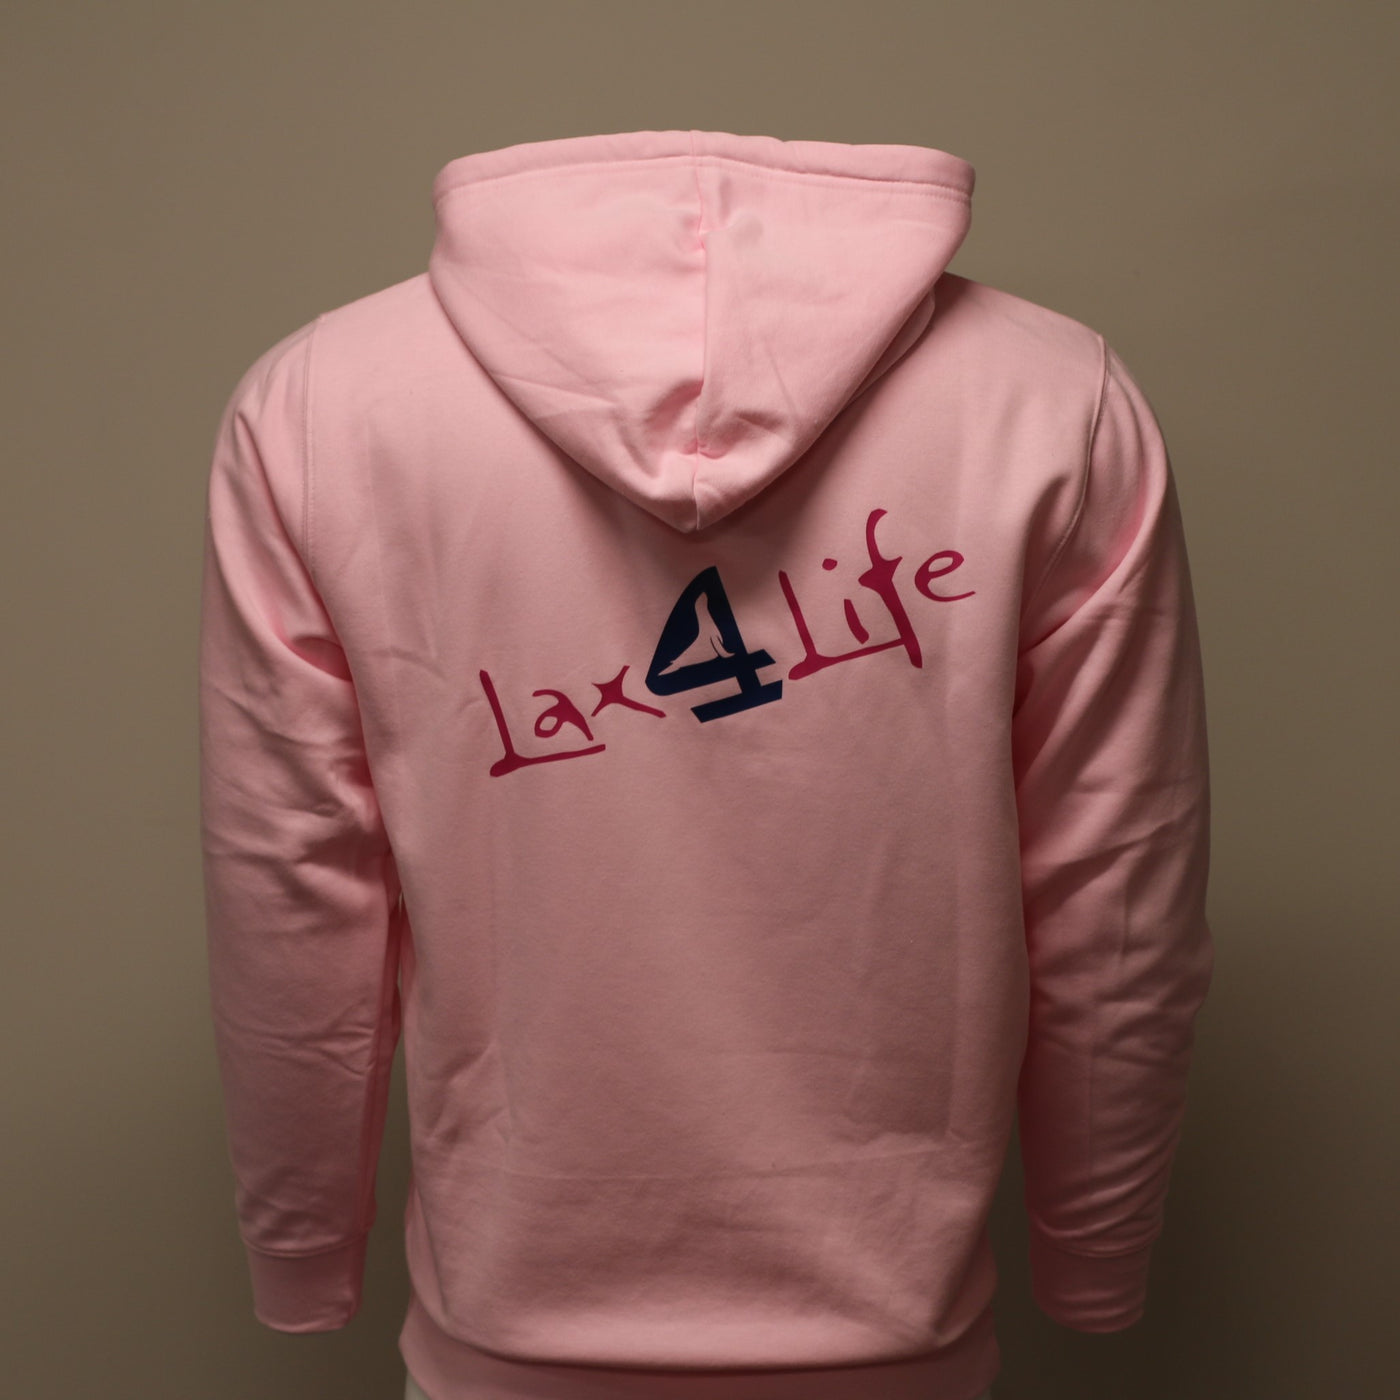 4 Lacrosse - Lax 4 Life - Adult Pink Hoodie